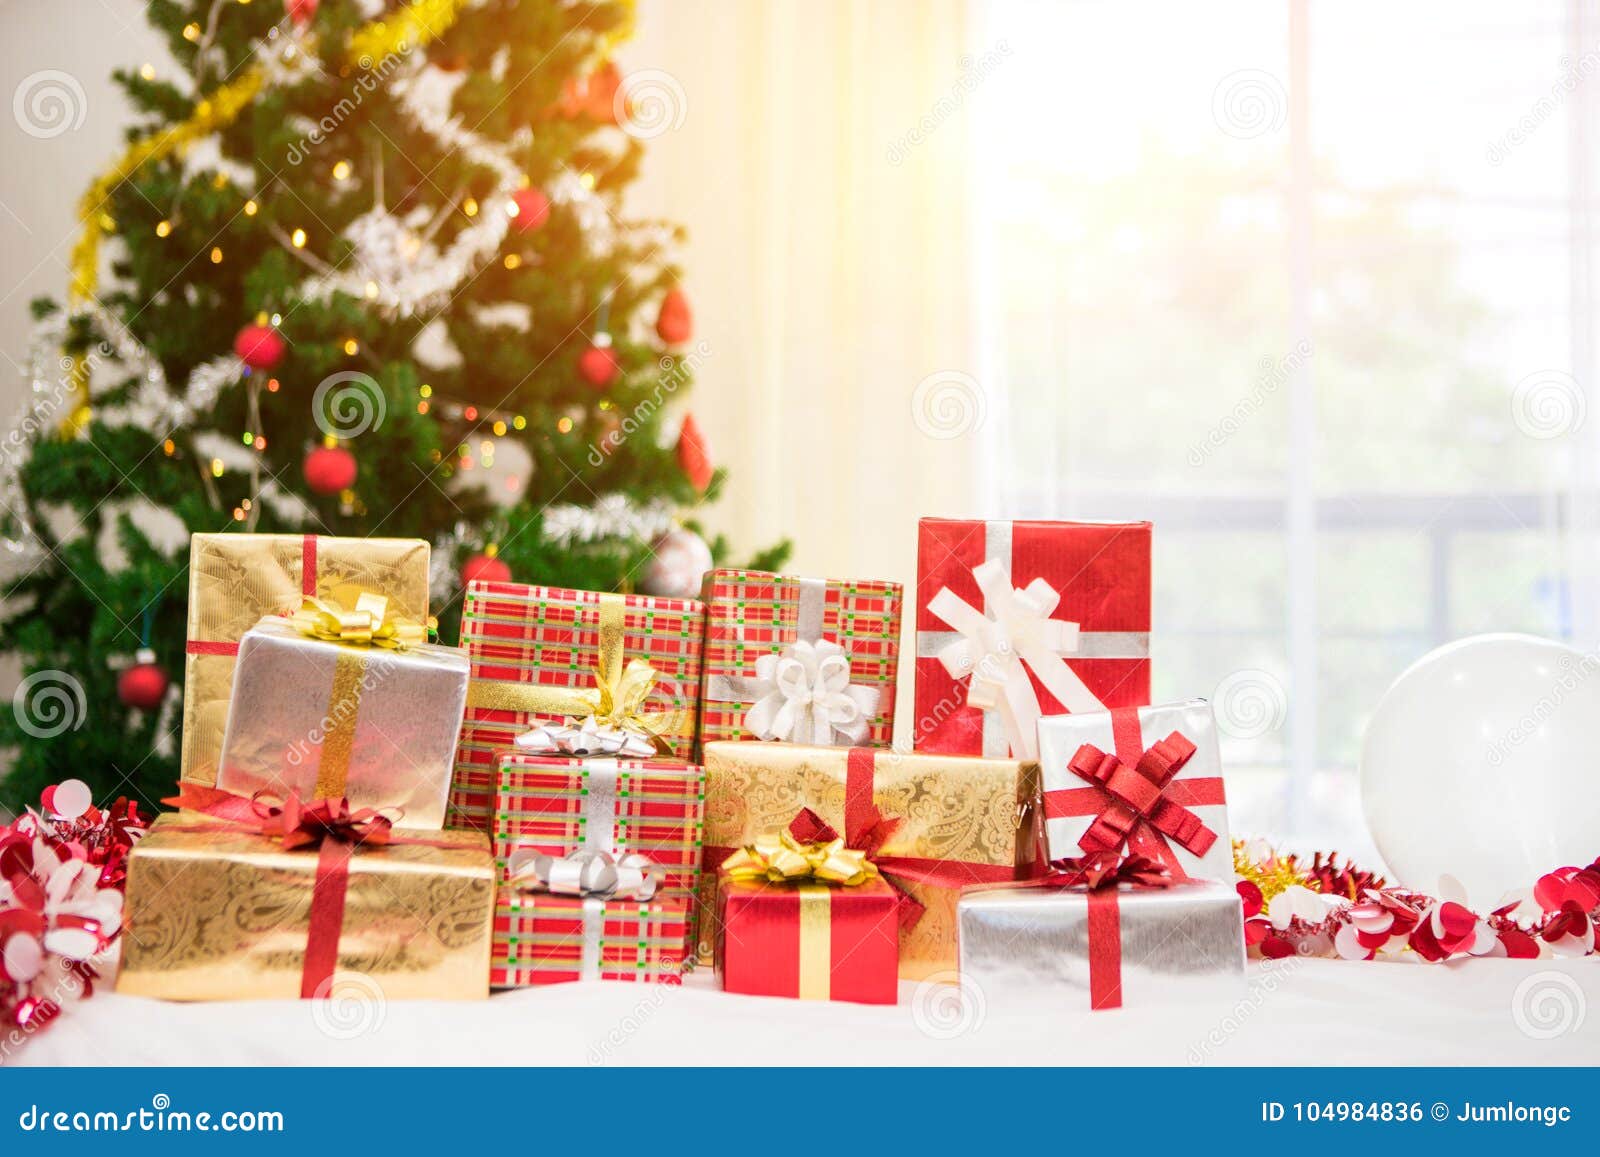 Caixas De Presente Com árvore De Natal Foto de Stock - Imagem de festival,  caixas: 104984836